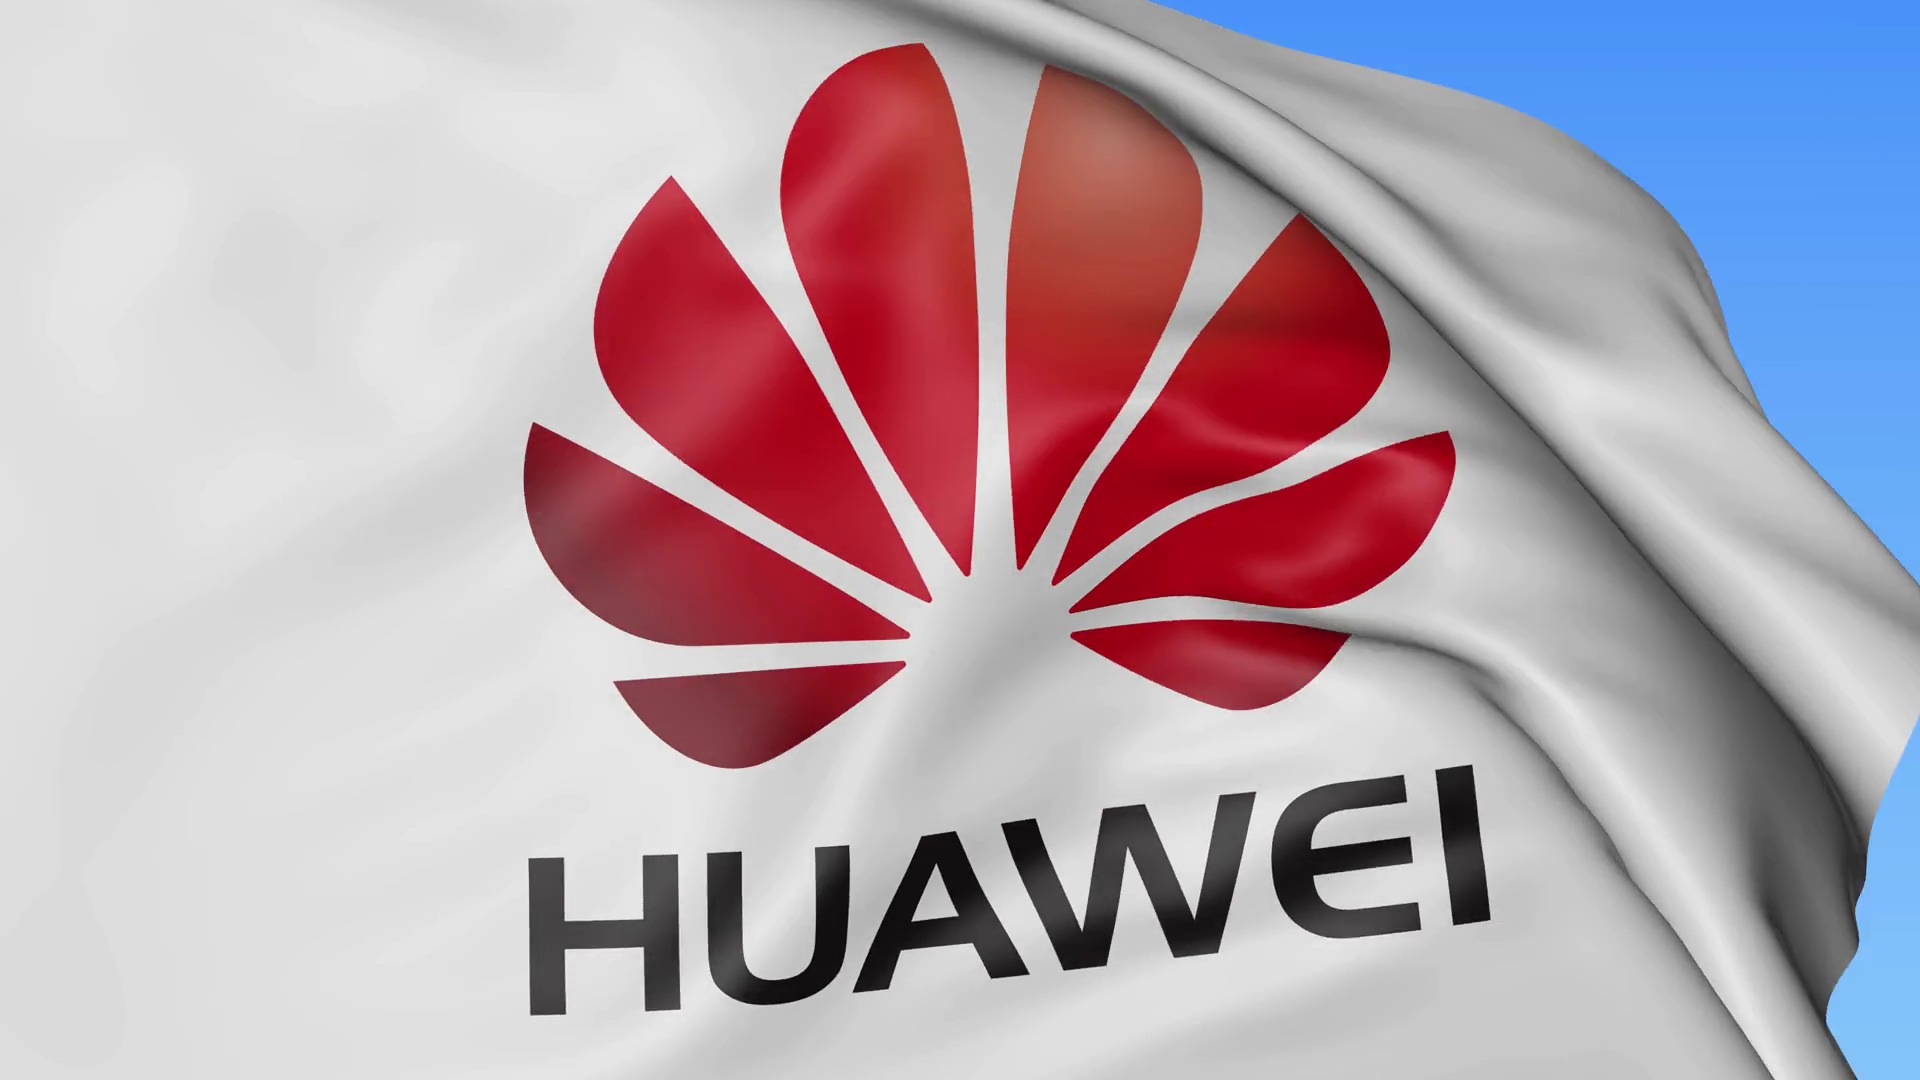 Huawei Apple’ı Geçerek Dünyanın İkinci Telefon Üreticisi Oldu